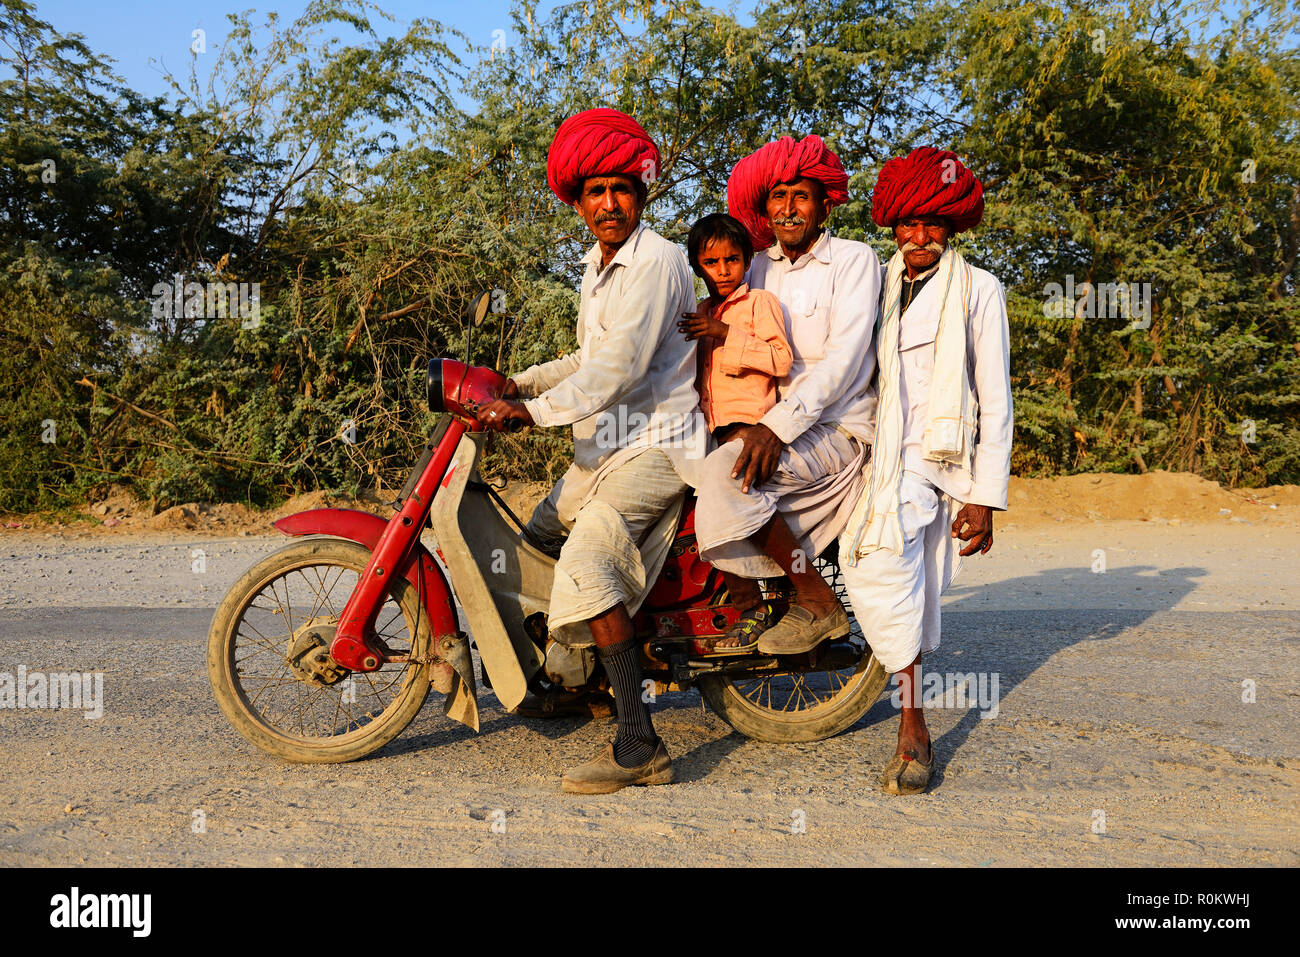 Quatre hommes de trois générations ensemble sur une moto, Rajasthan, Inde Banque D'Images